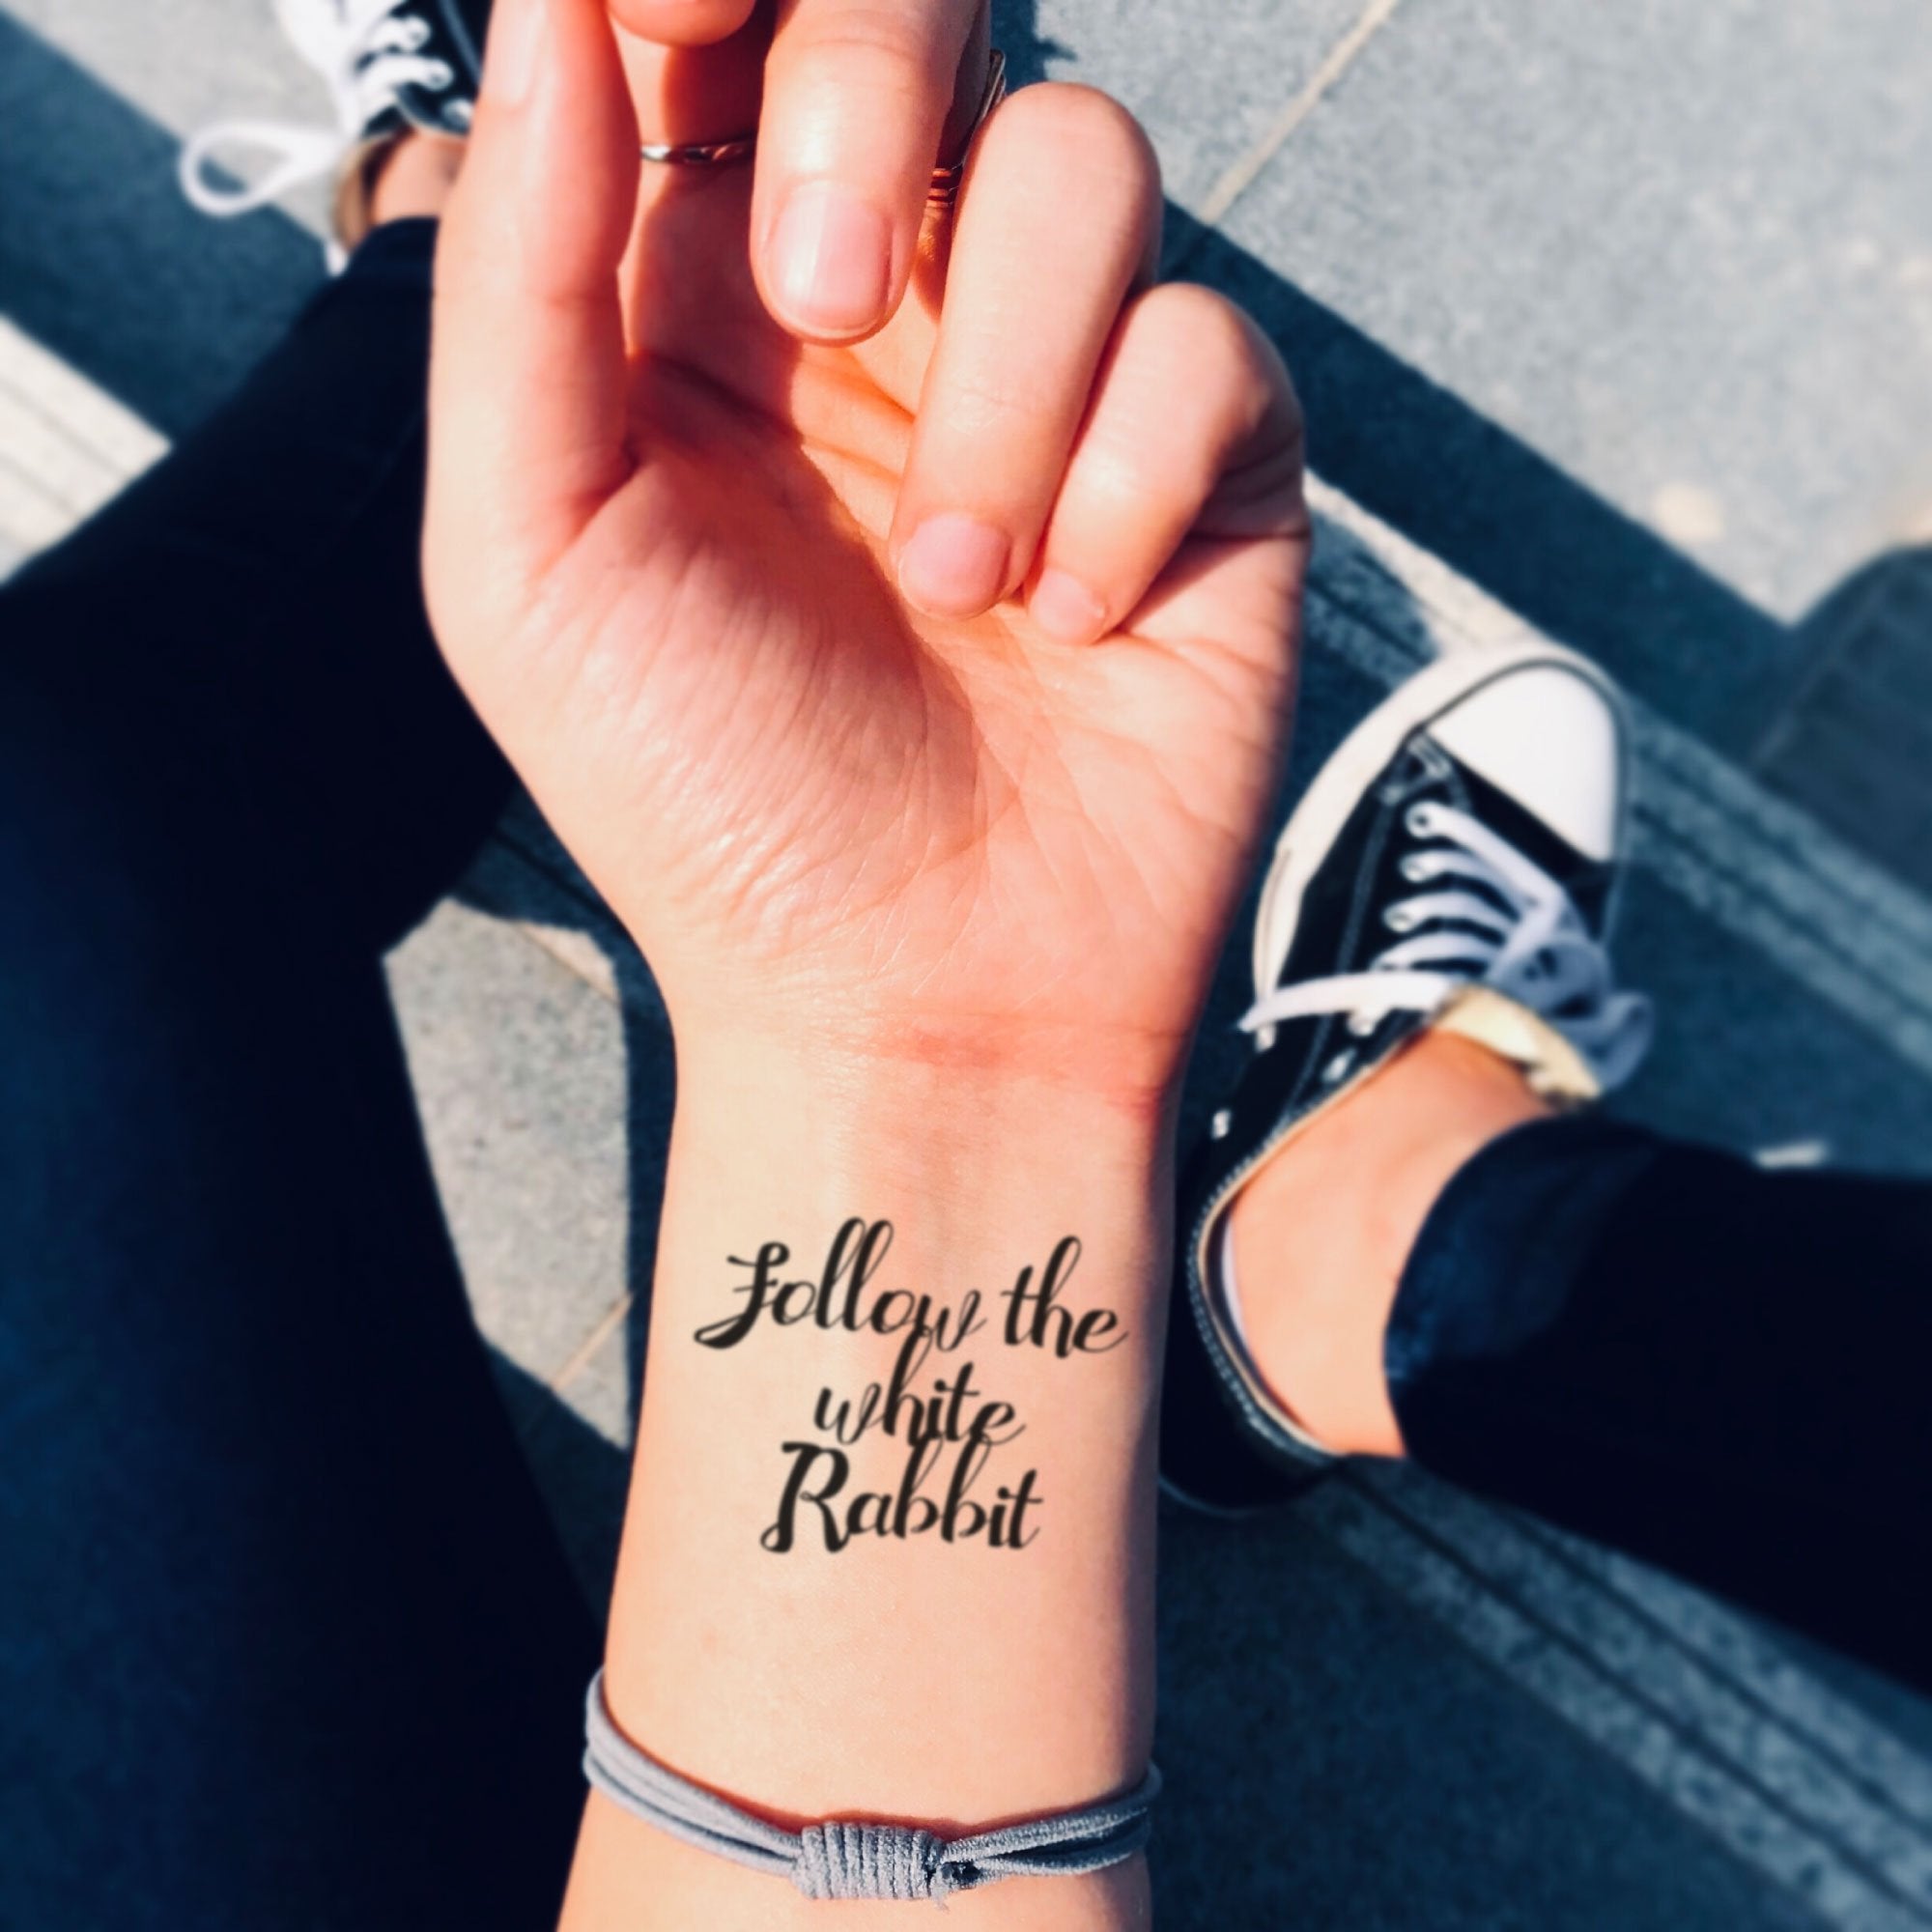 Tiffani Thiessen Debuts New Wrist Tattoo on Instagram